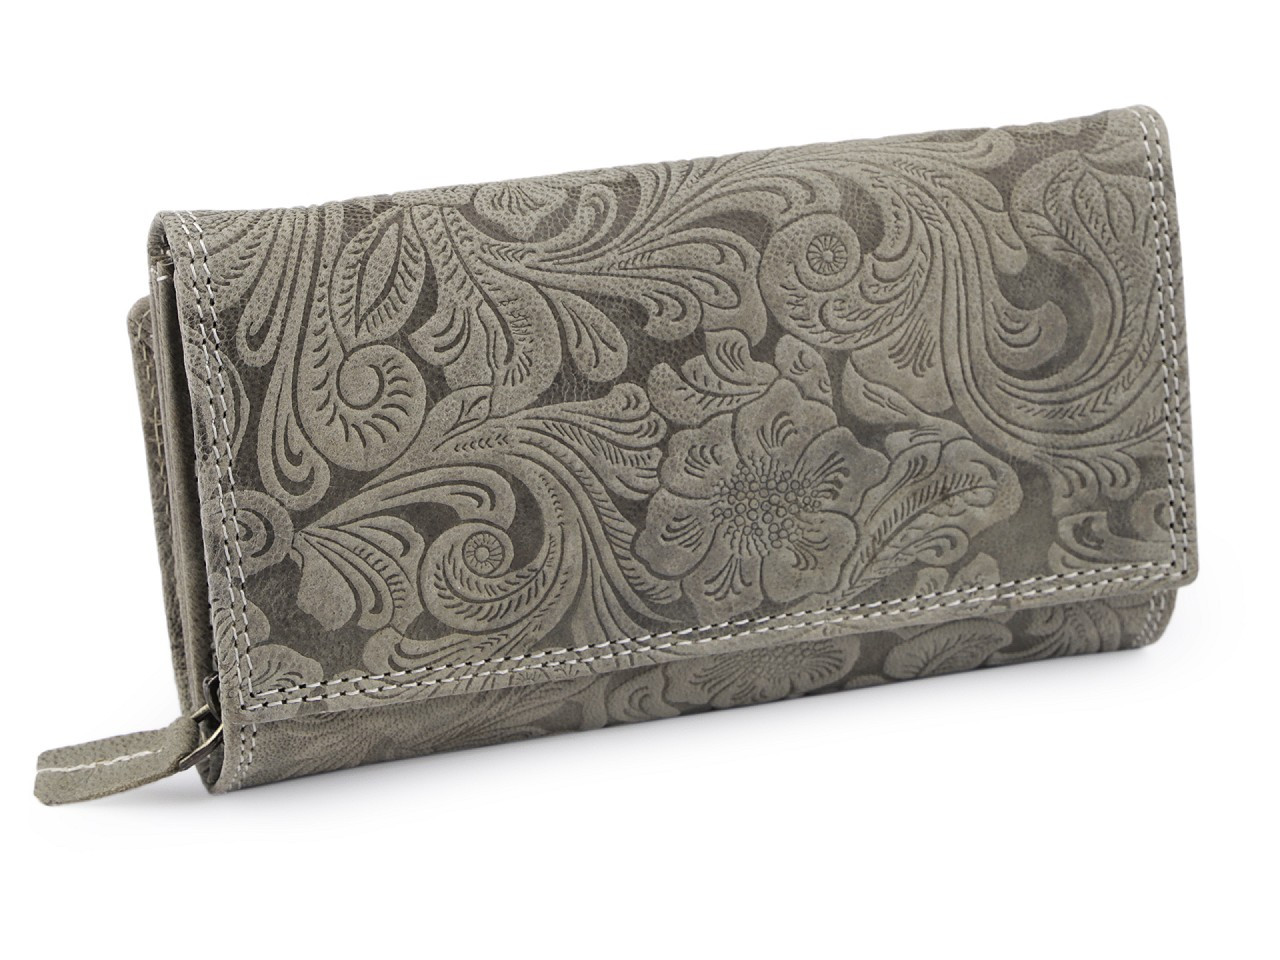 Dámská peněženka kožená s květy, barva 10 šedozelená sv.